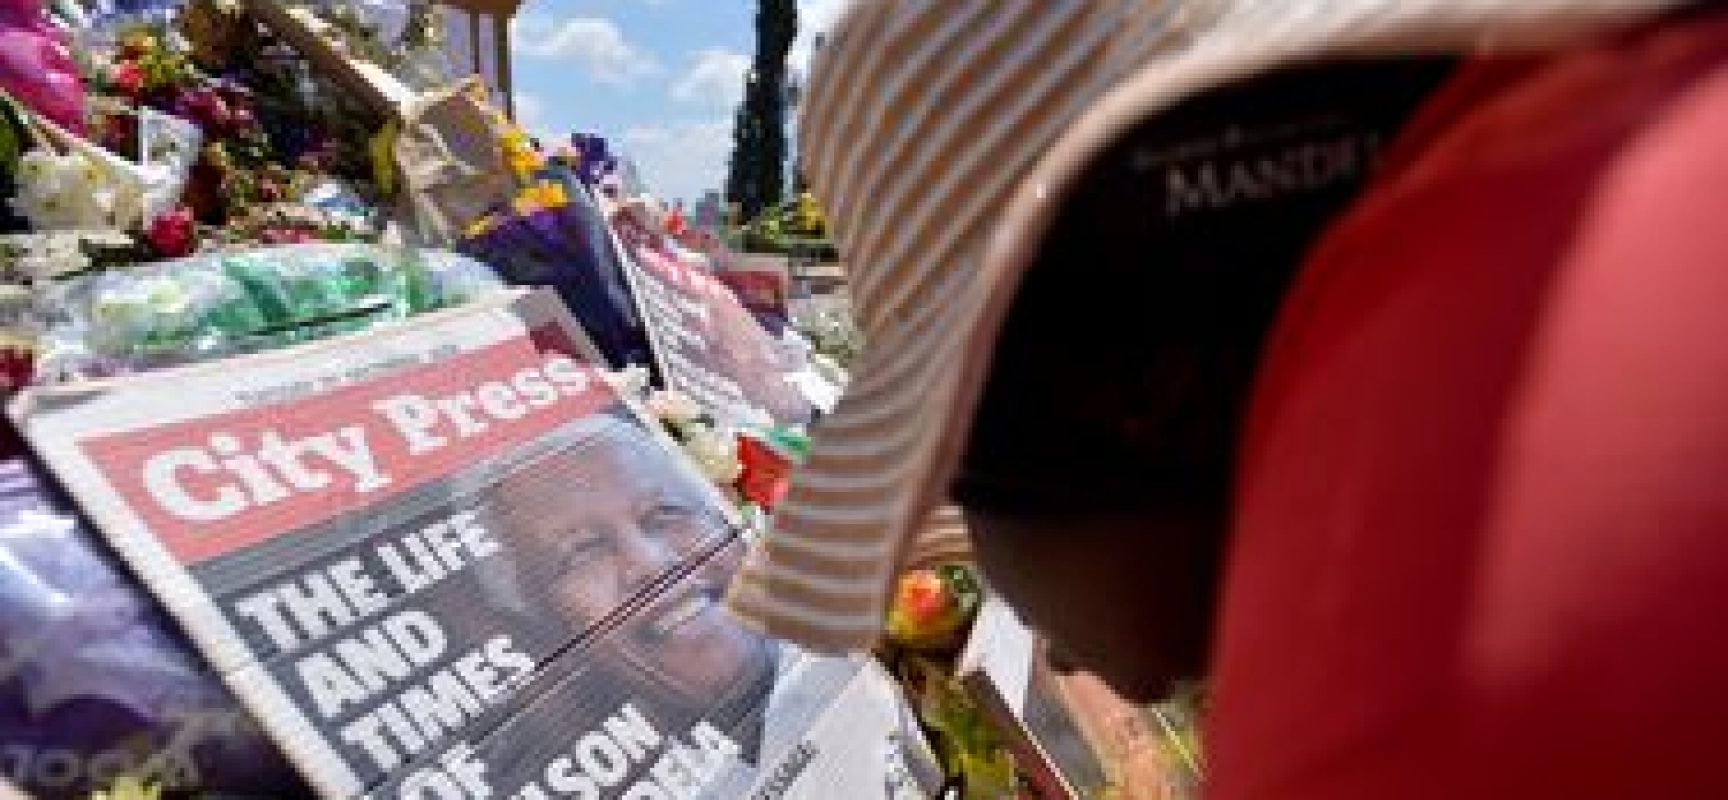 ONU recorda Mandela como “defensor global da dignidade e igualdade”